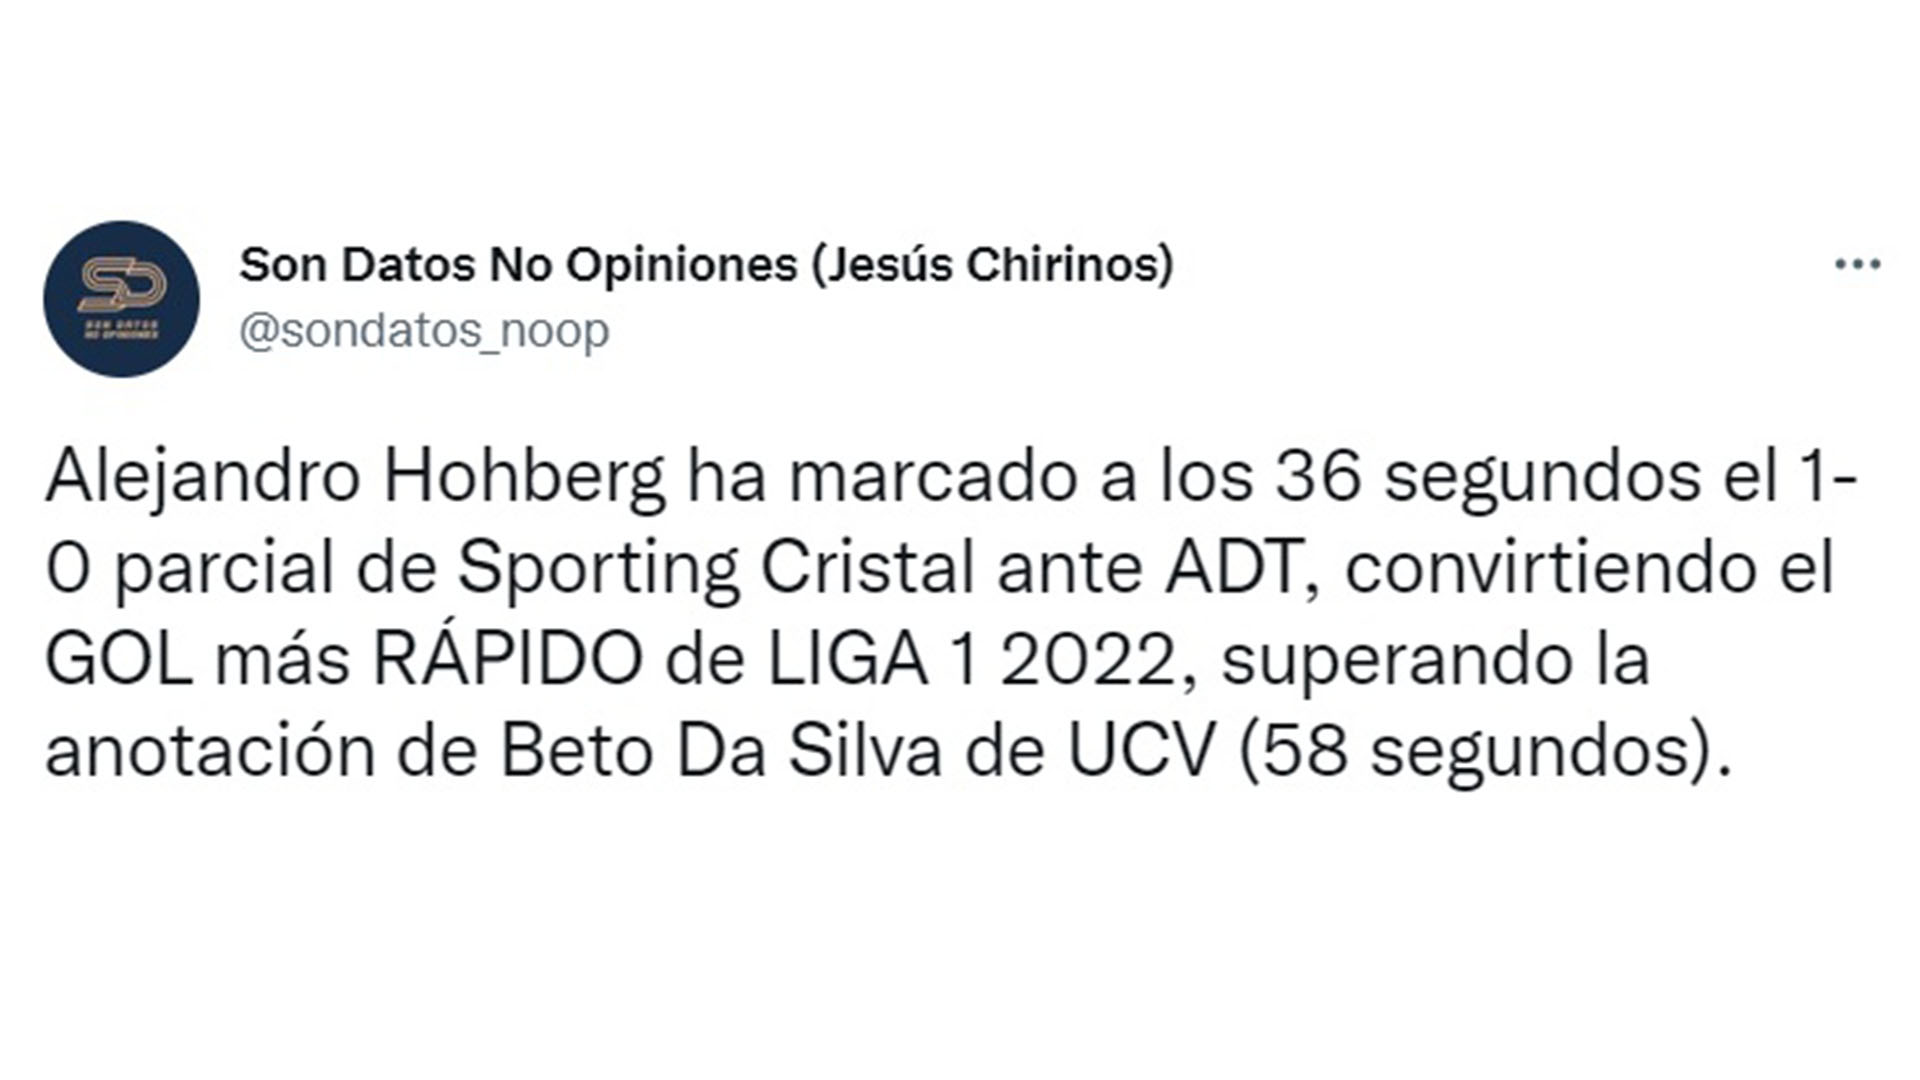 Dato estadístico sobre el gol de Alejandro Hohberg en el Sporting Cristal vs ADT.